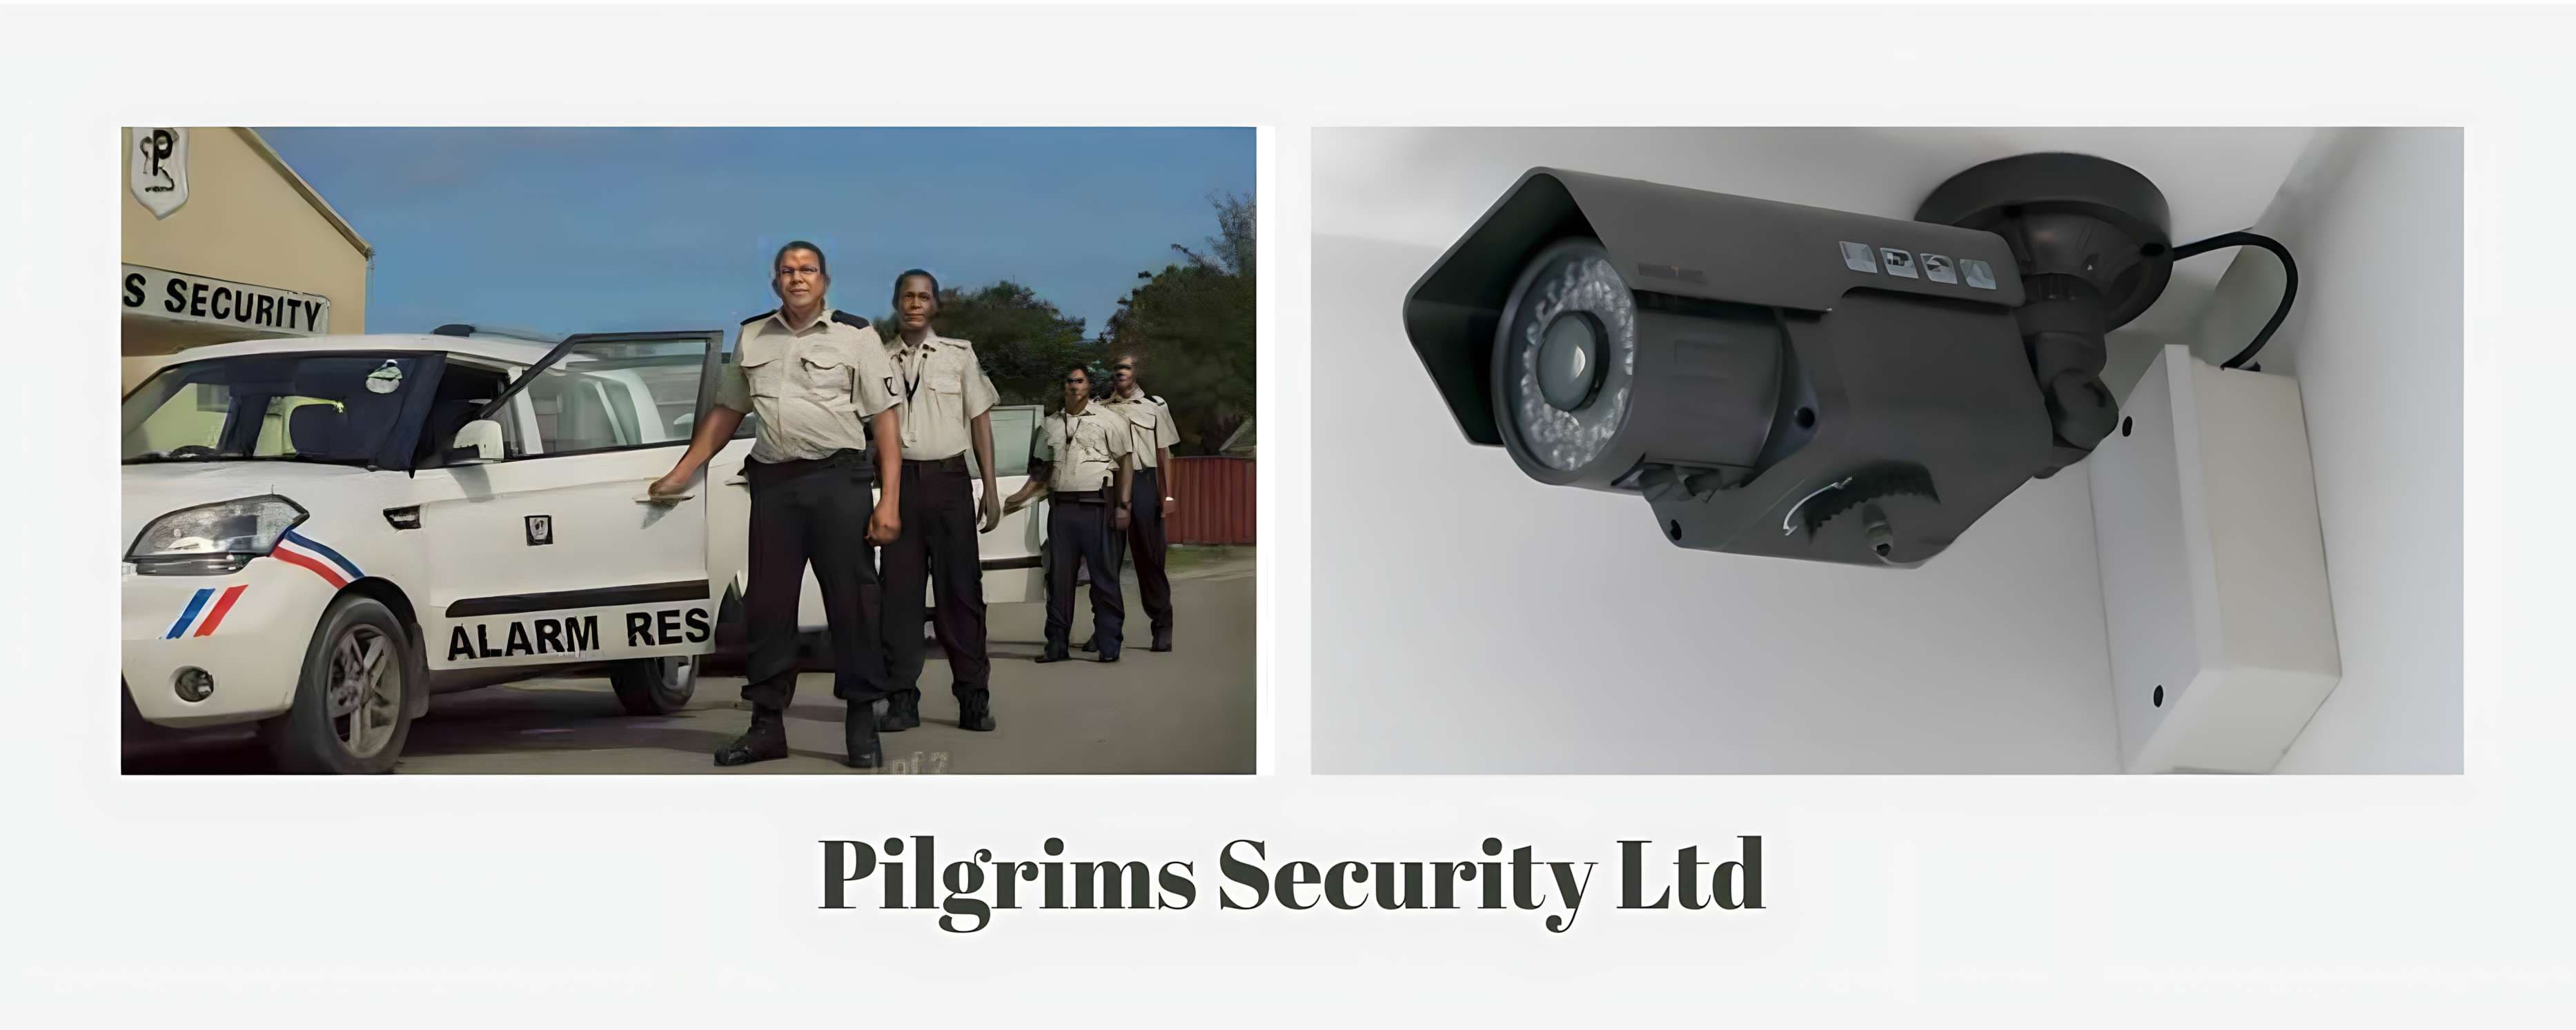 Pilgrims Security Ltd